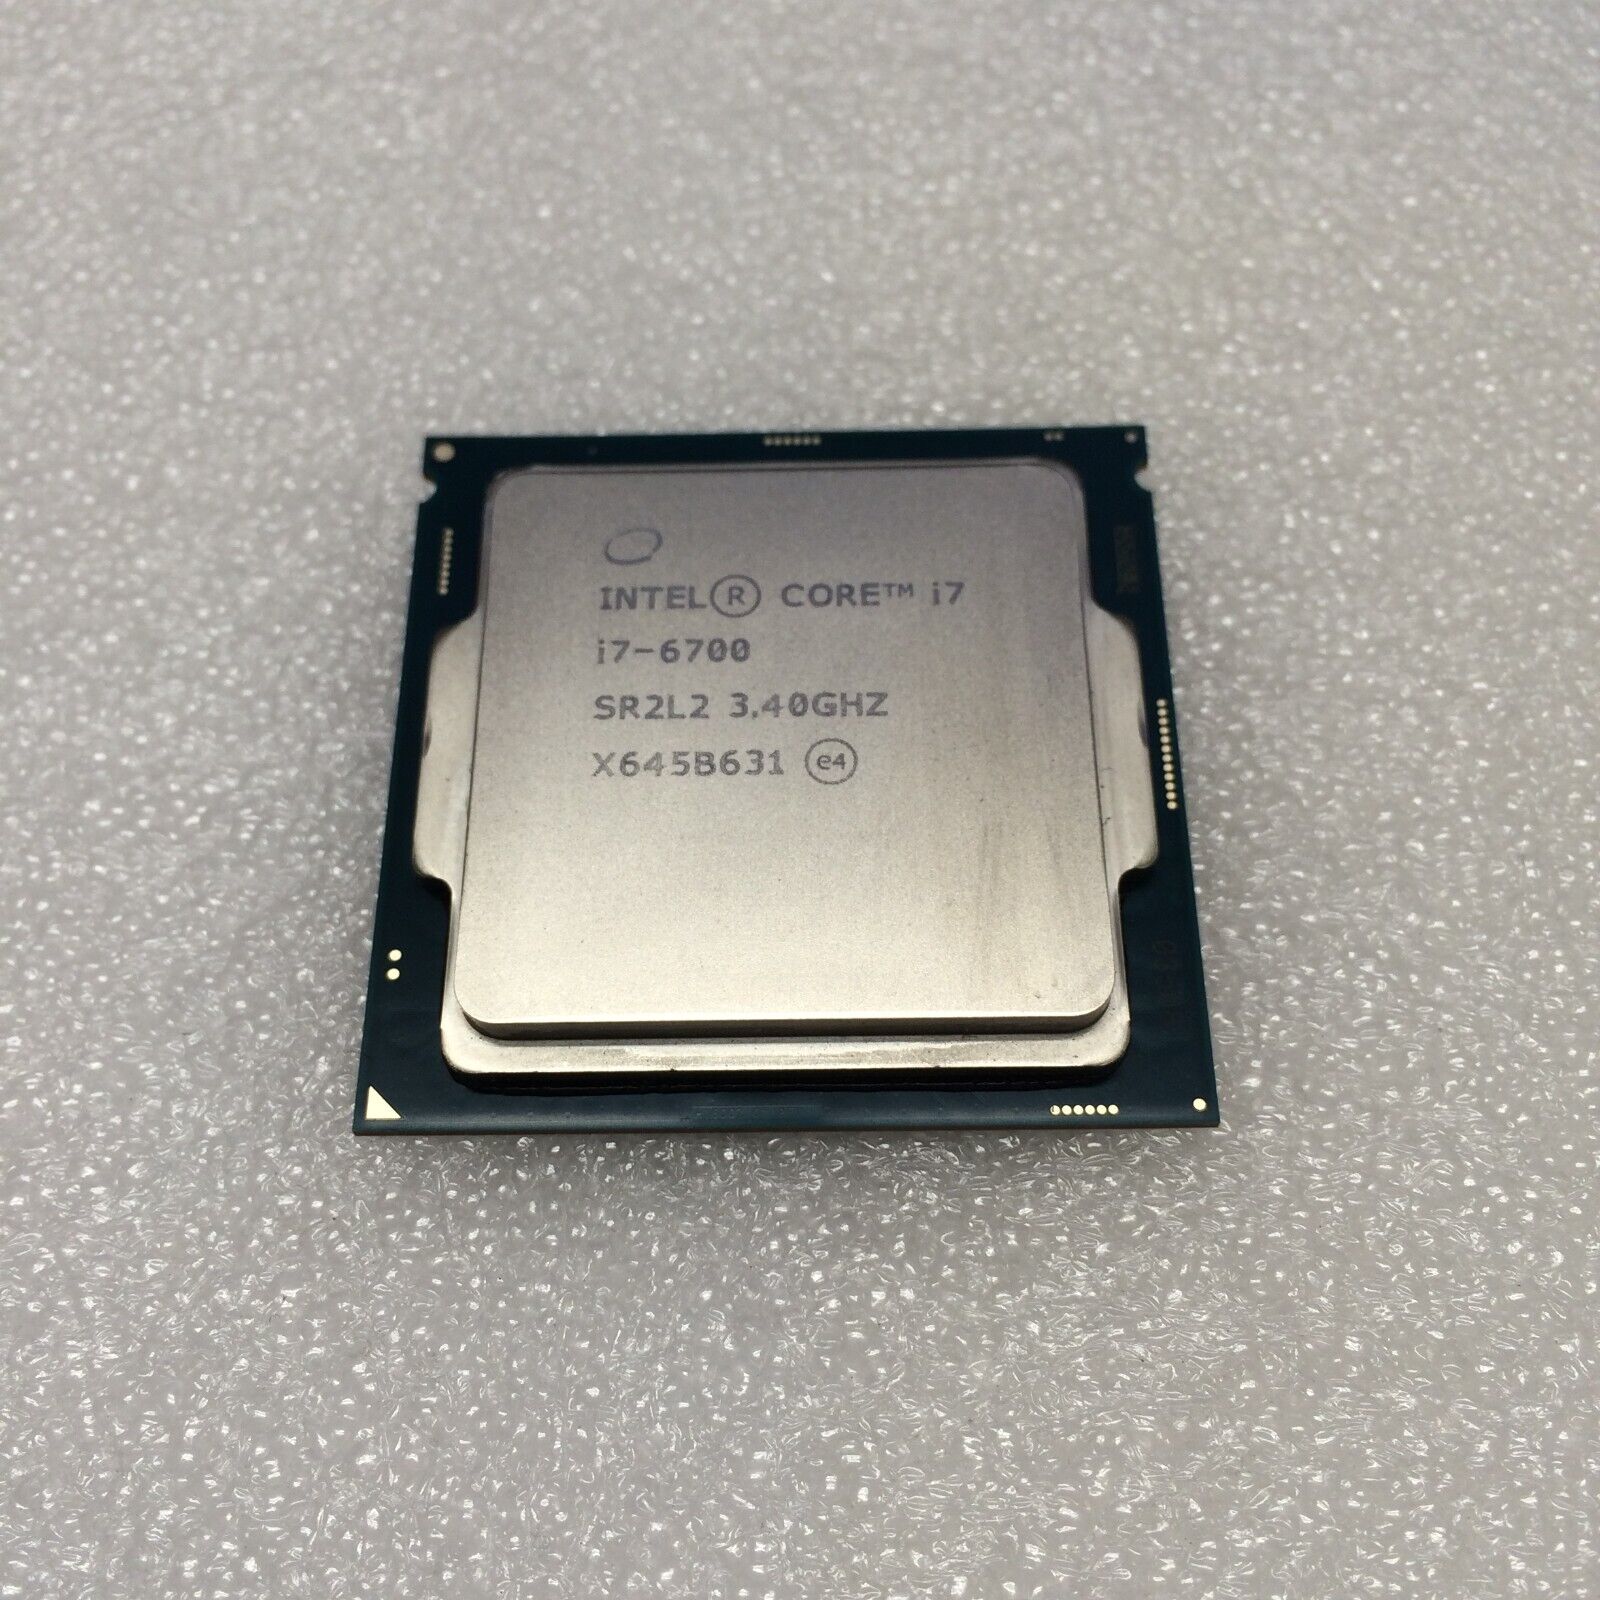 Intel Core i7-6700 Socket LGA 1151 3.4GHz SR2L2 8MB Smart Cache CPU/Processor